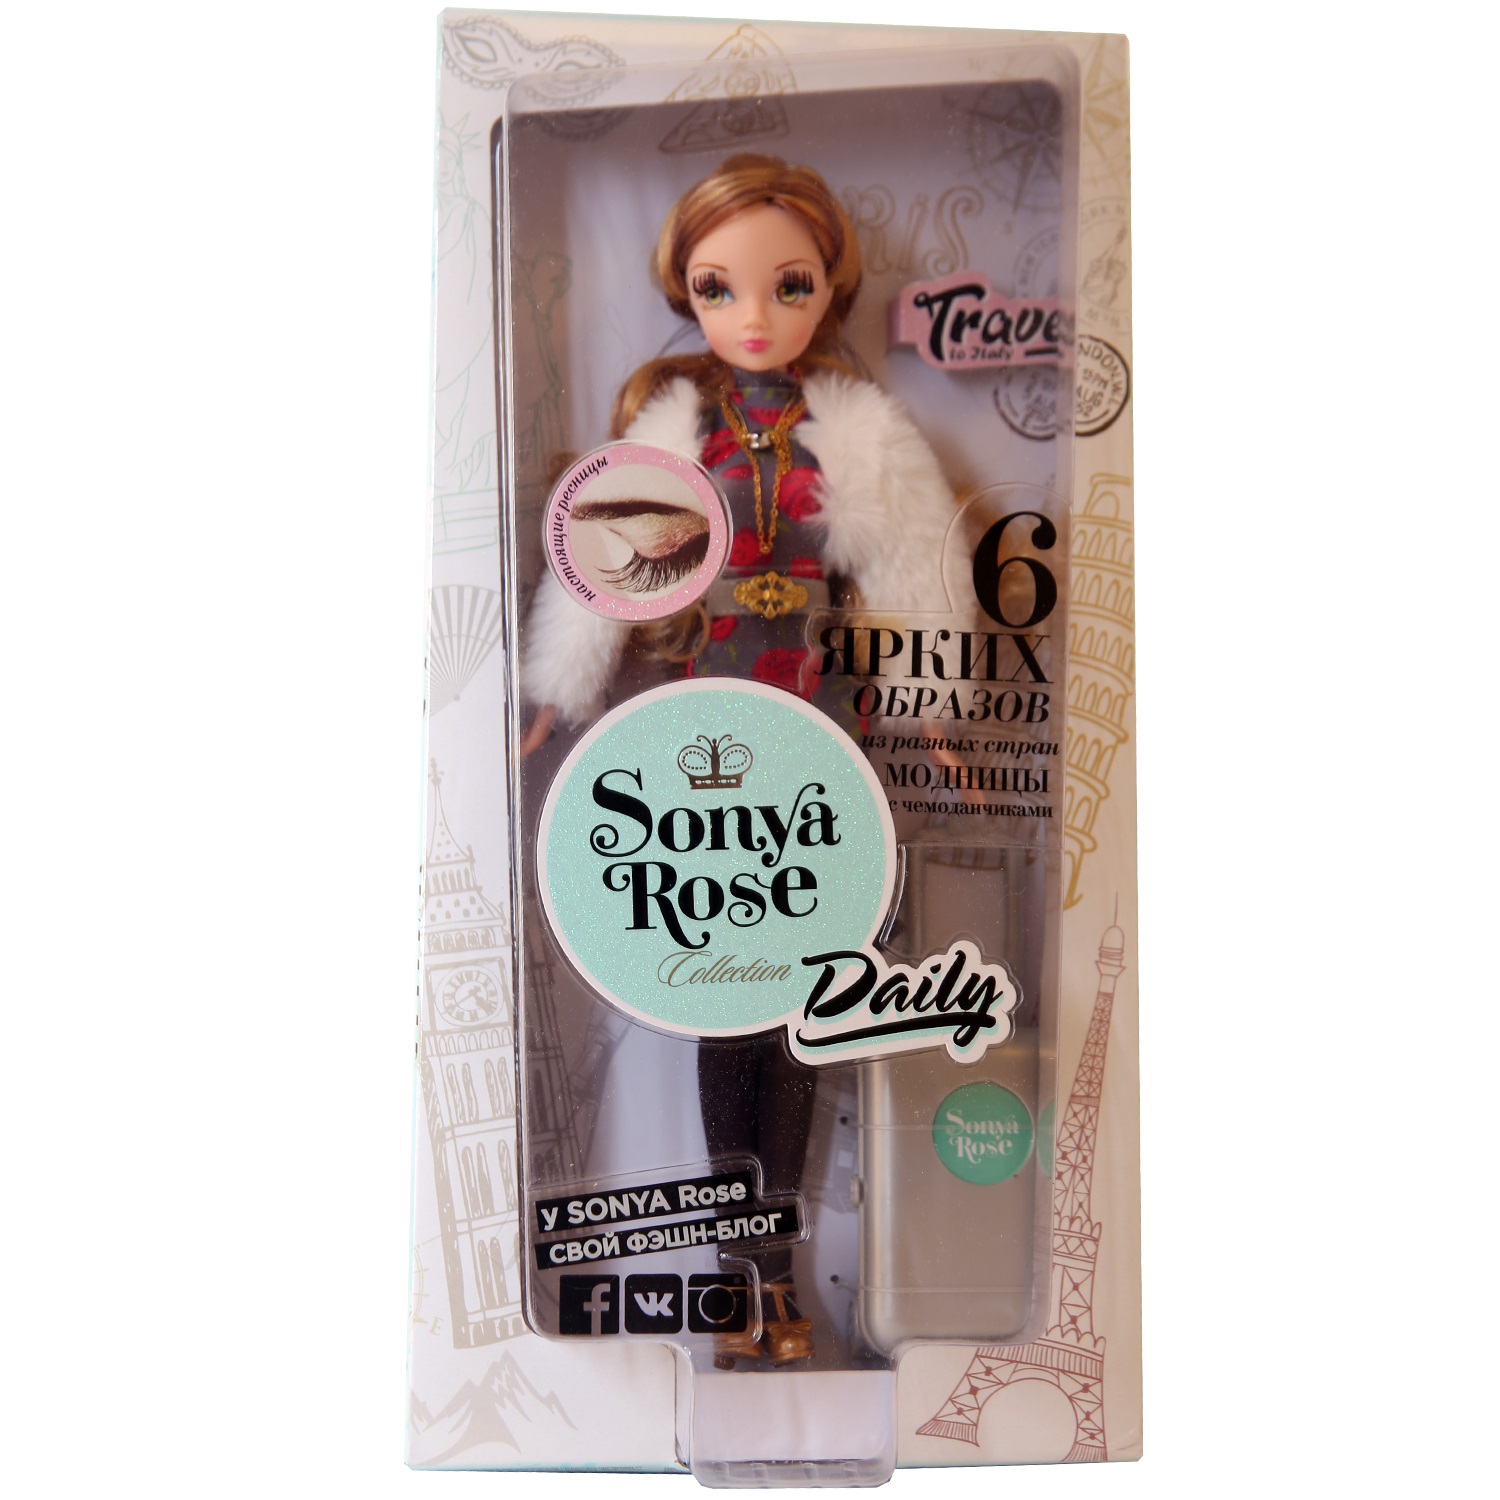 Кукла Sonya Rose, серия - Daily collection - Путешествие в Италию  